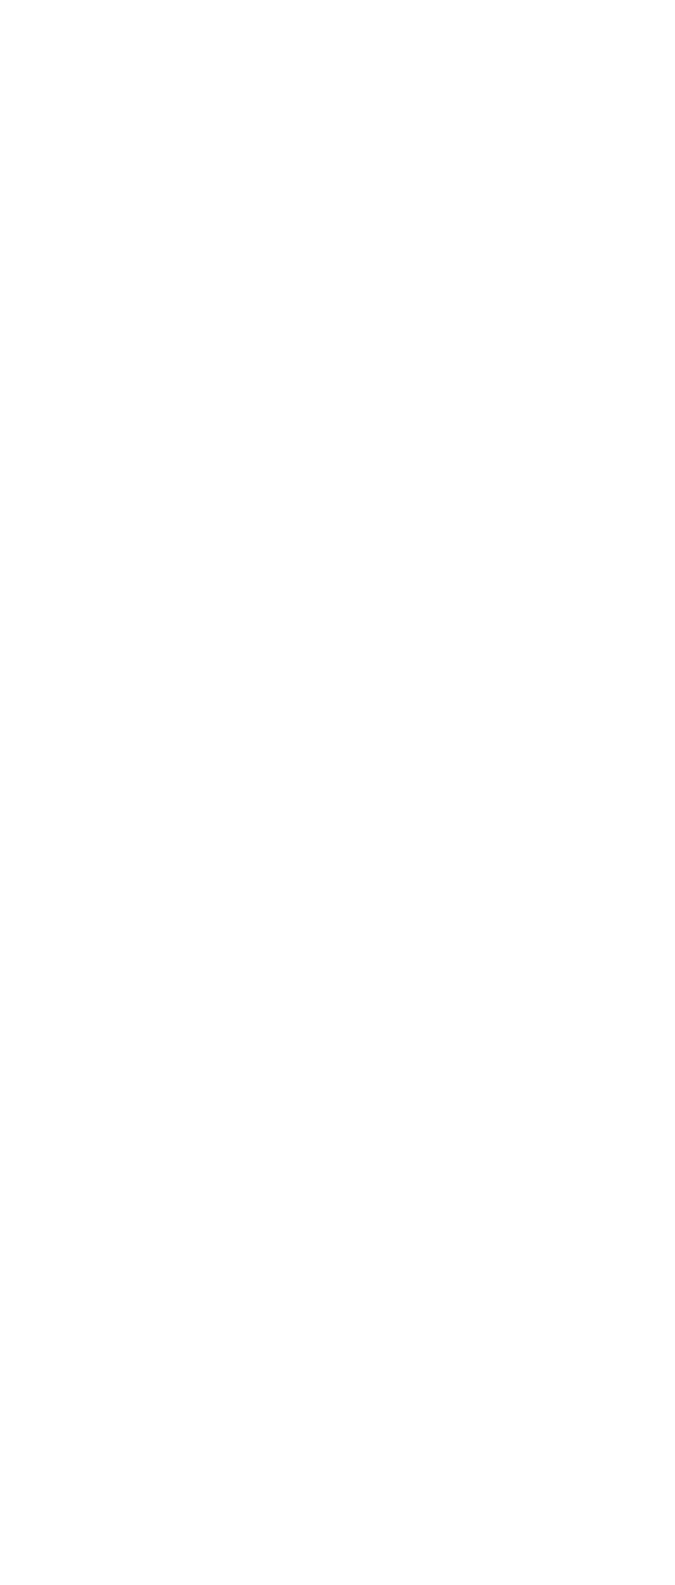 Türkiye Is Bankasi logo pour fonds sombres (PNG transparent)